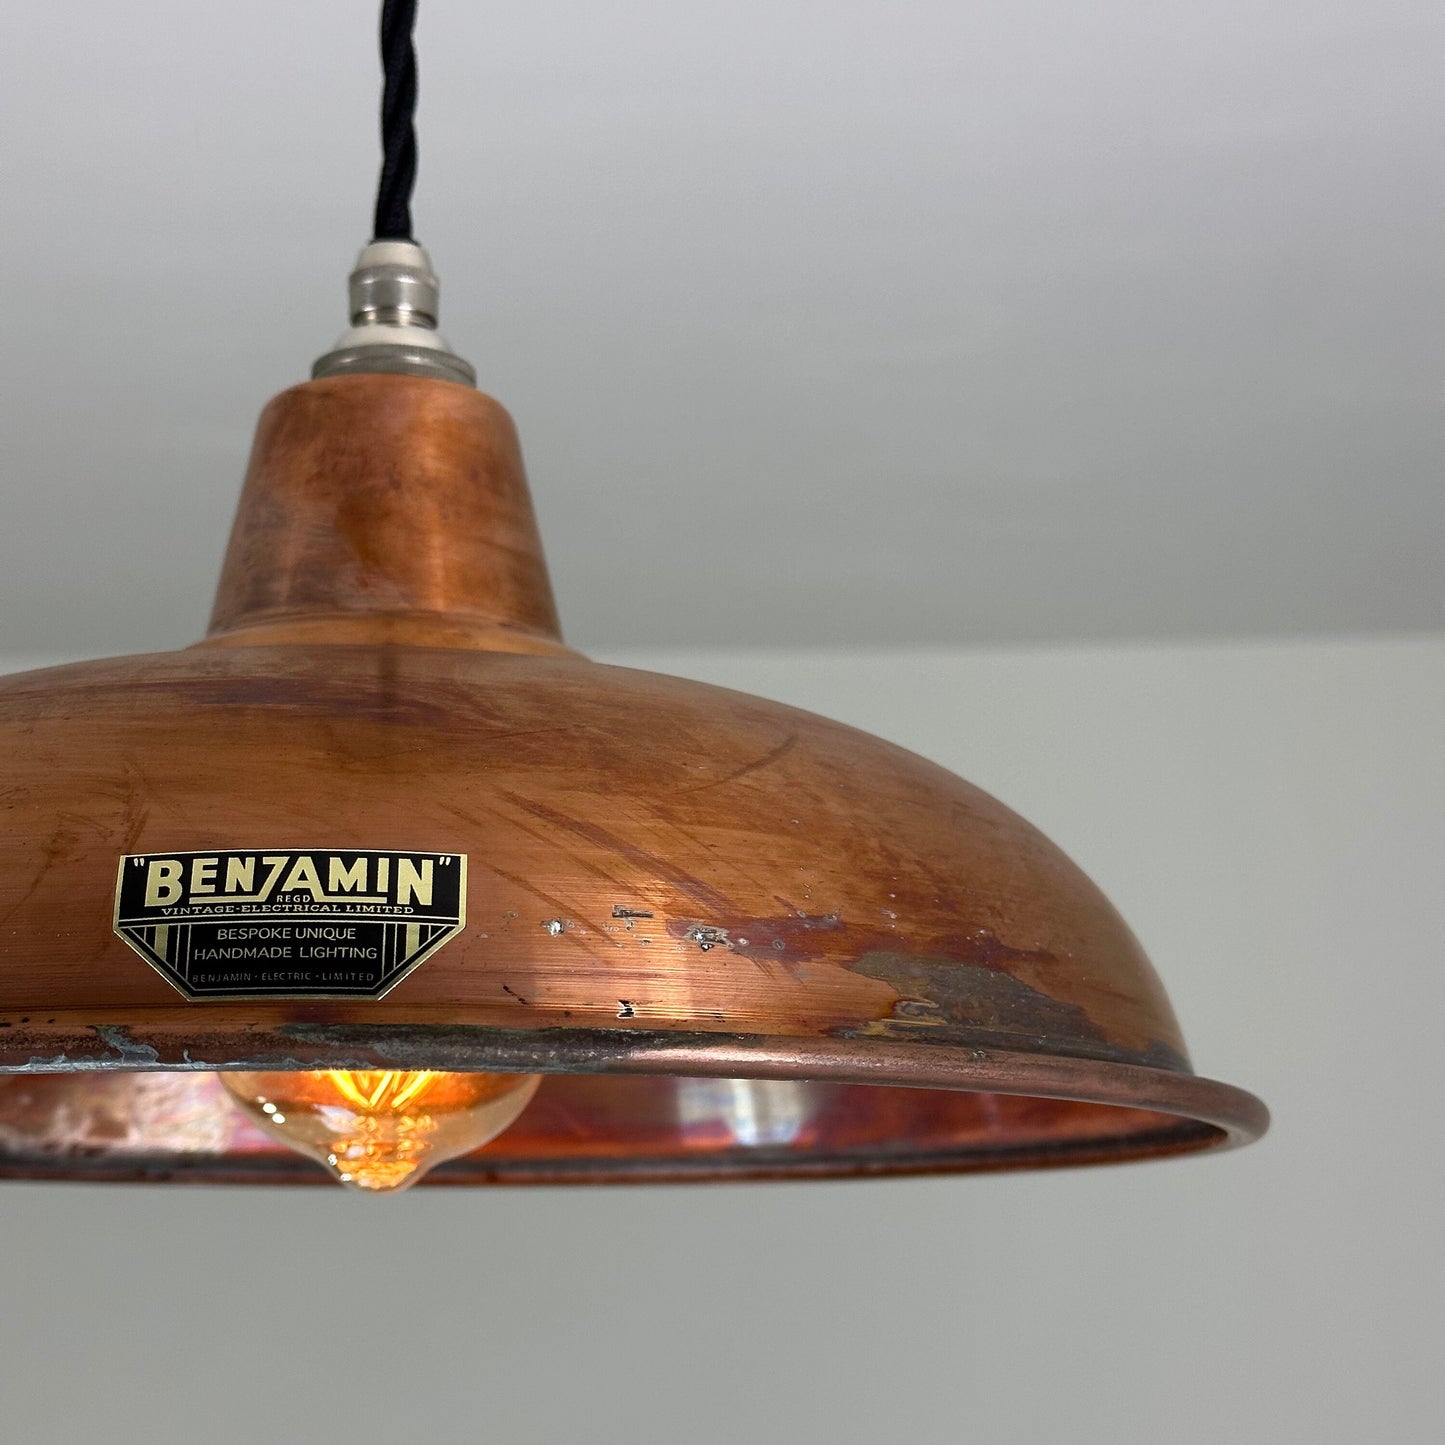 Sedgeford ~ **Worn** Antique Copper Lampshade Pendant Ceiling Light ~ 12 Inch